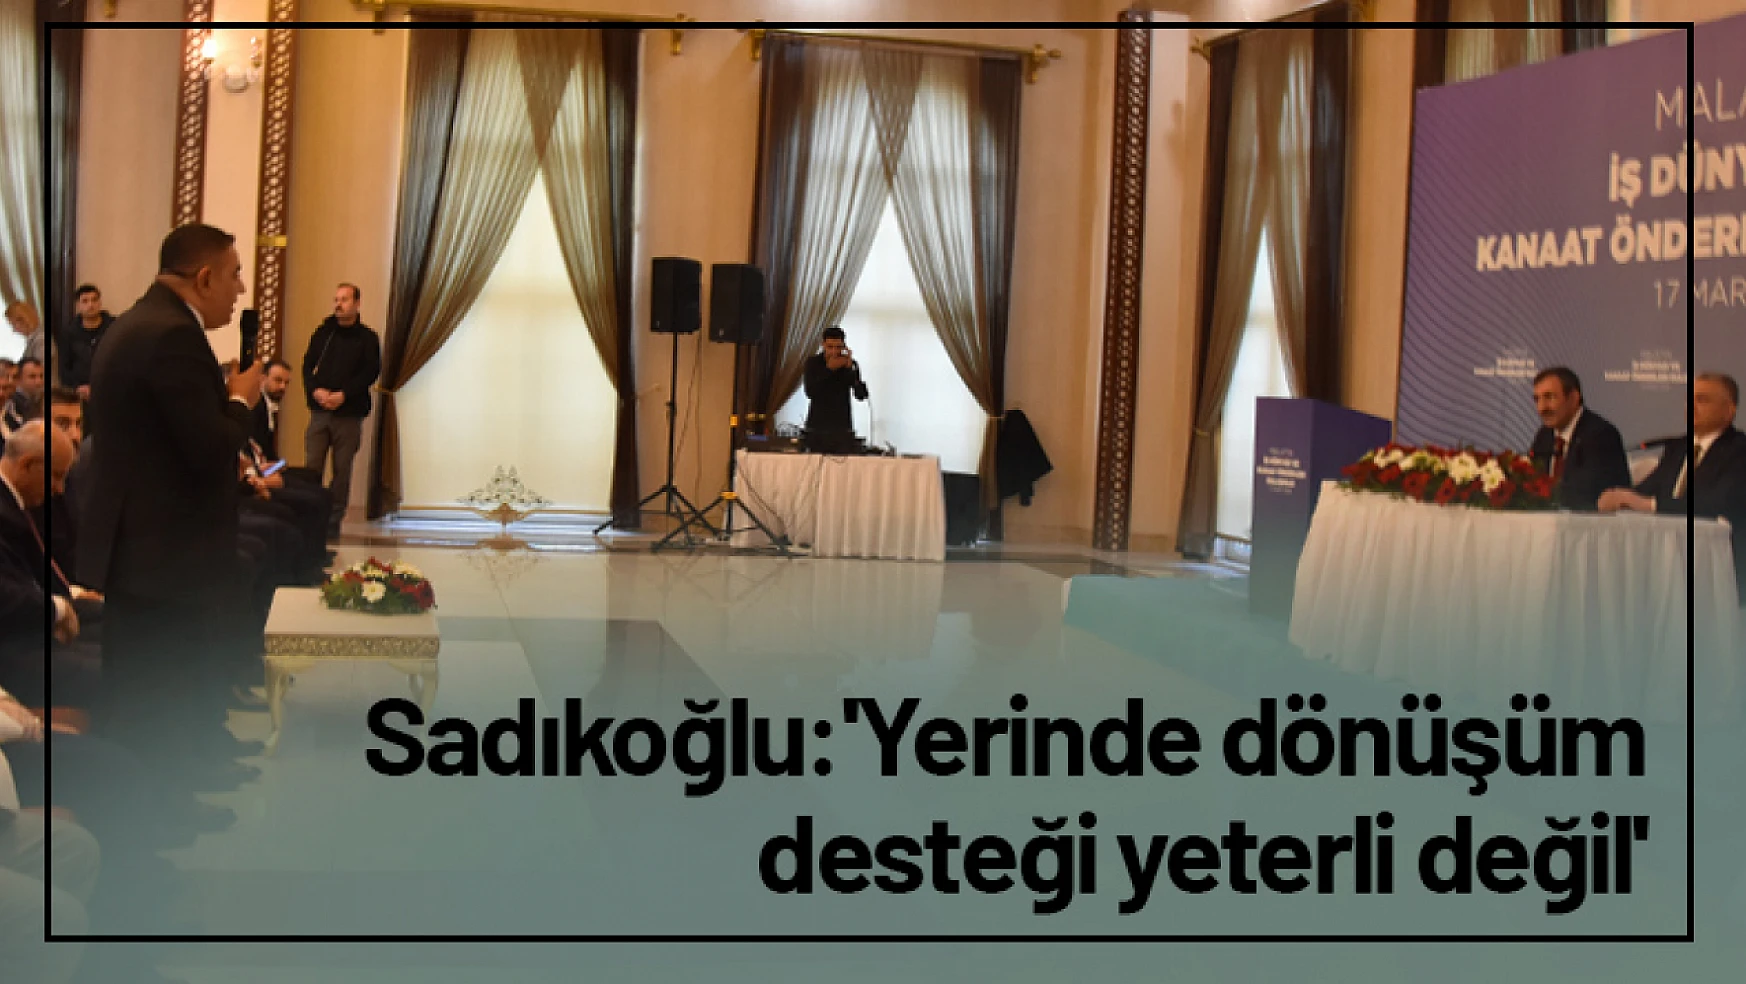 Sadıkoğlu: 'Yerinde dönüşüm desteği yeterli değil'